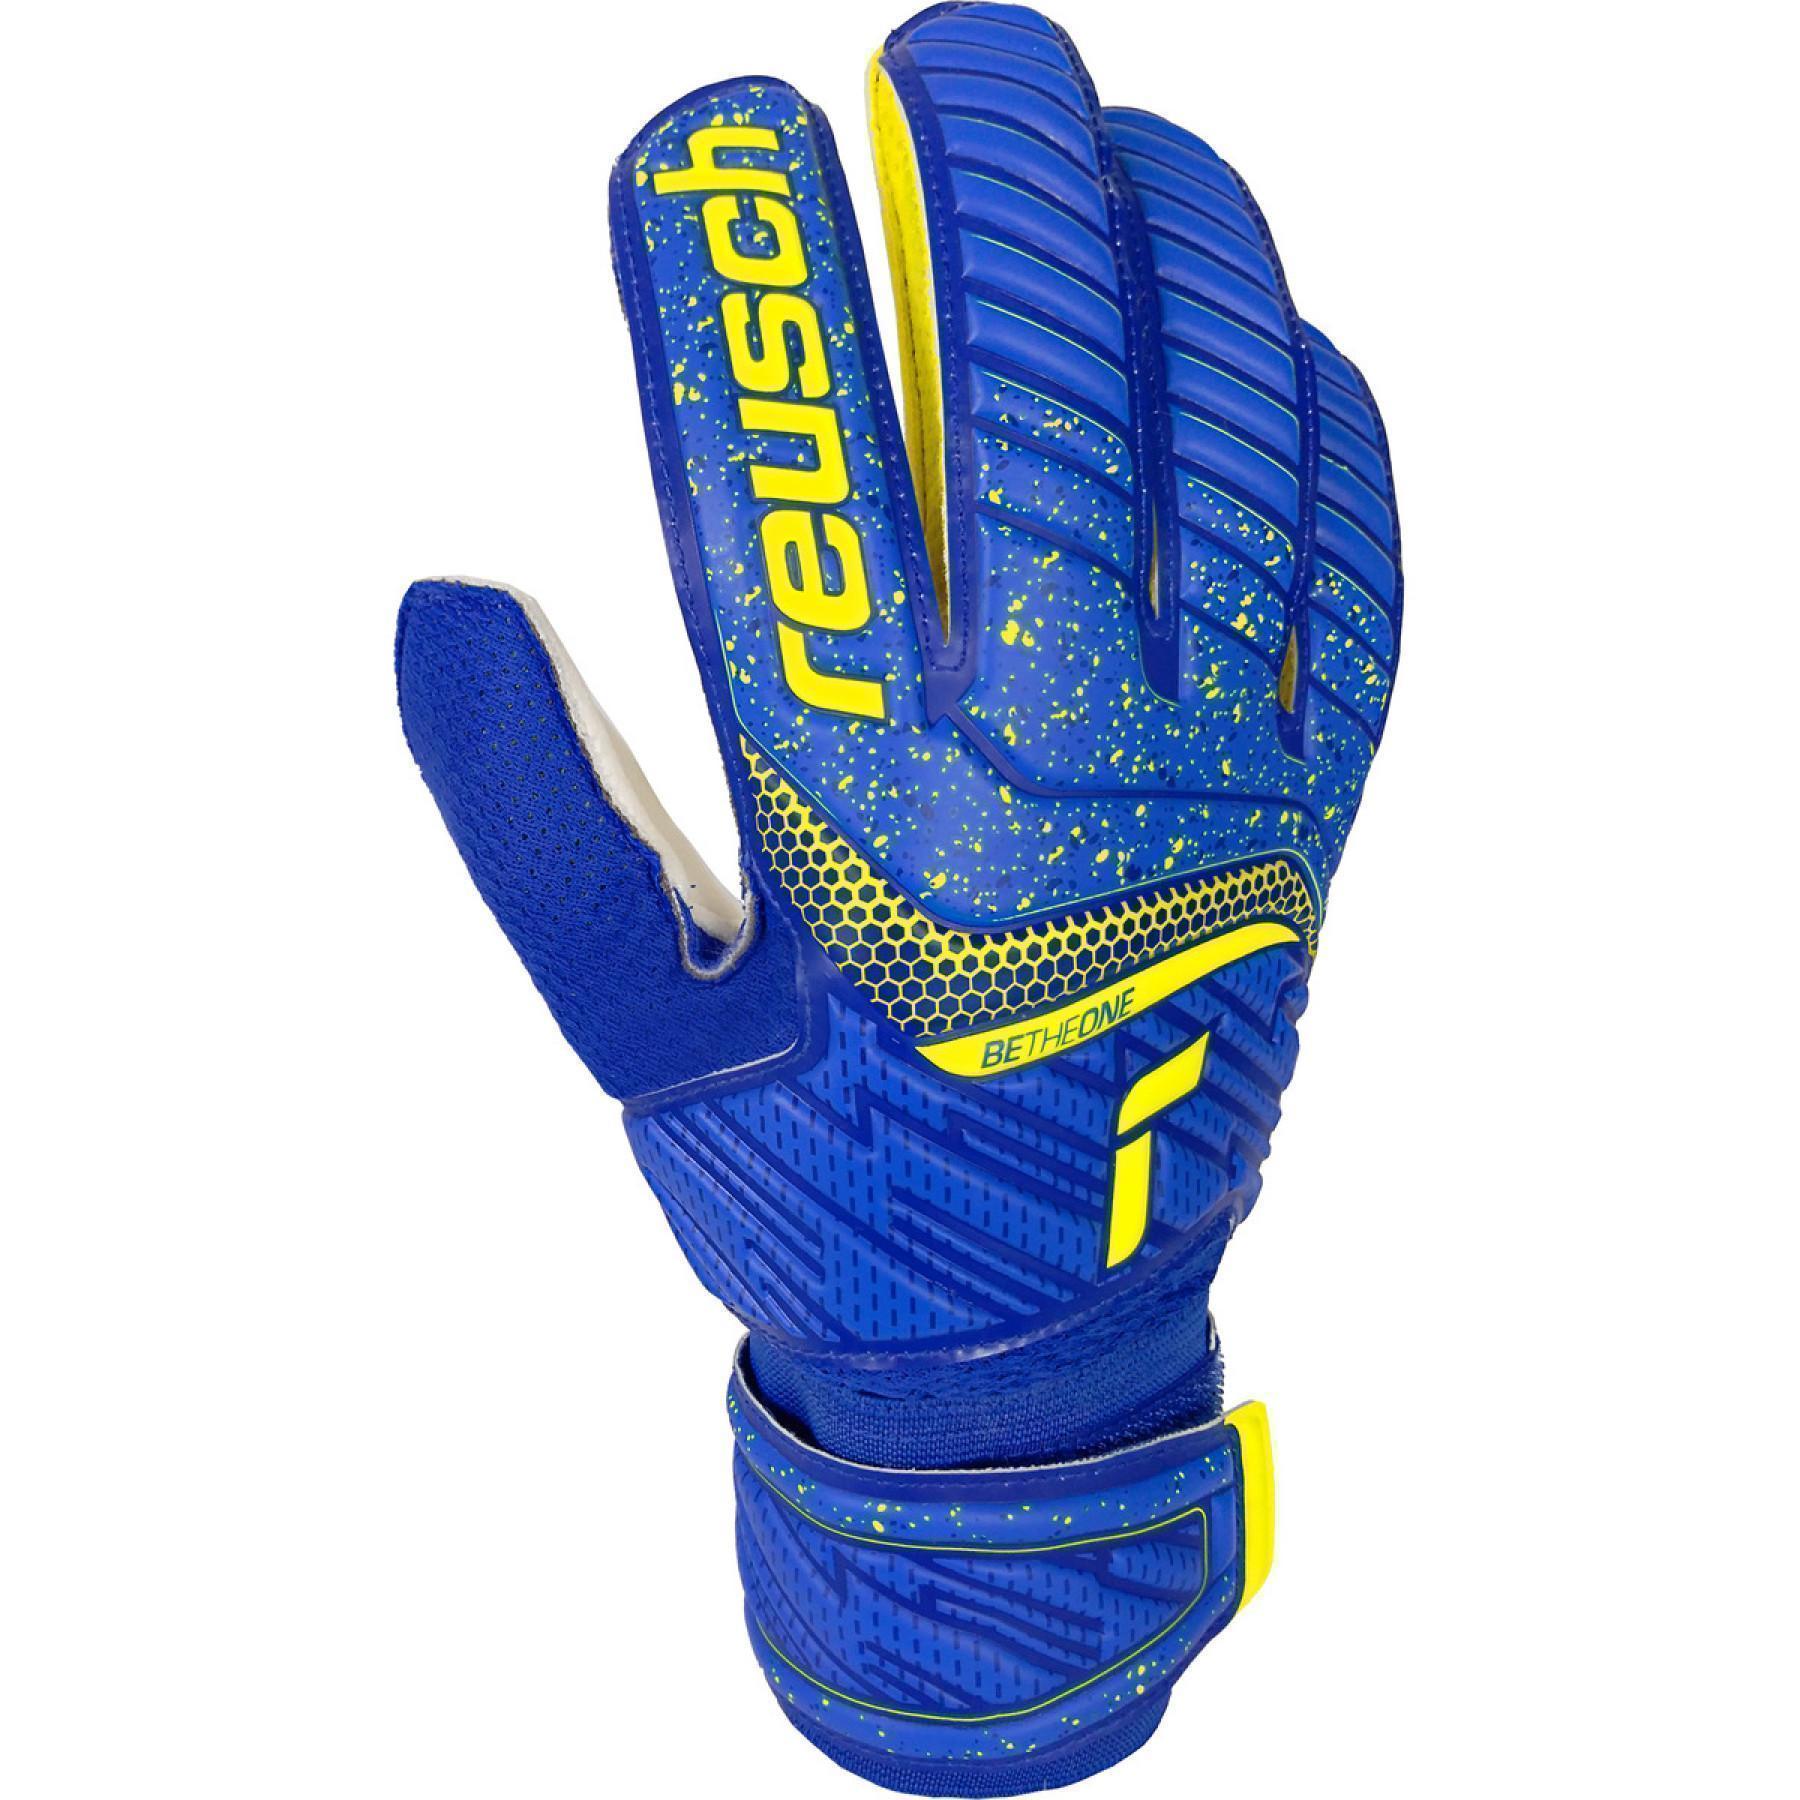 Goalkeeper gloves Reusch Attrakt Solid